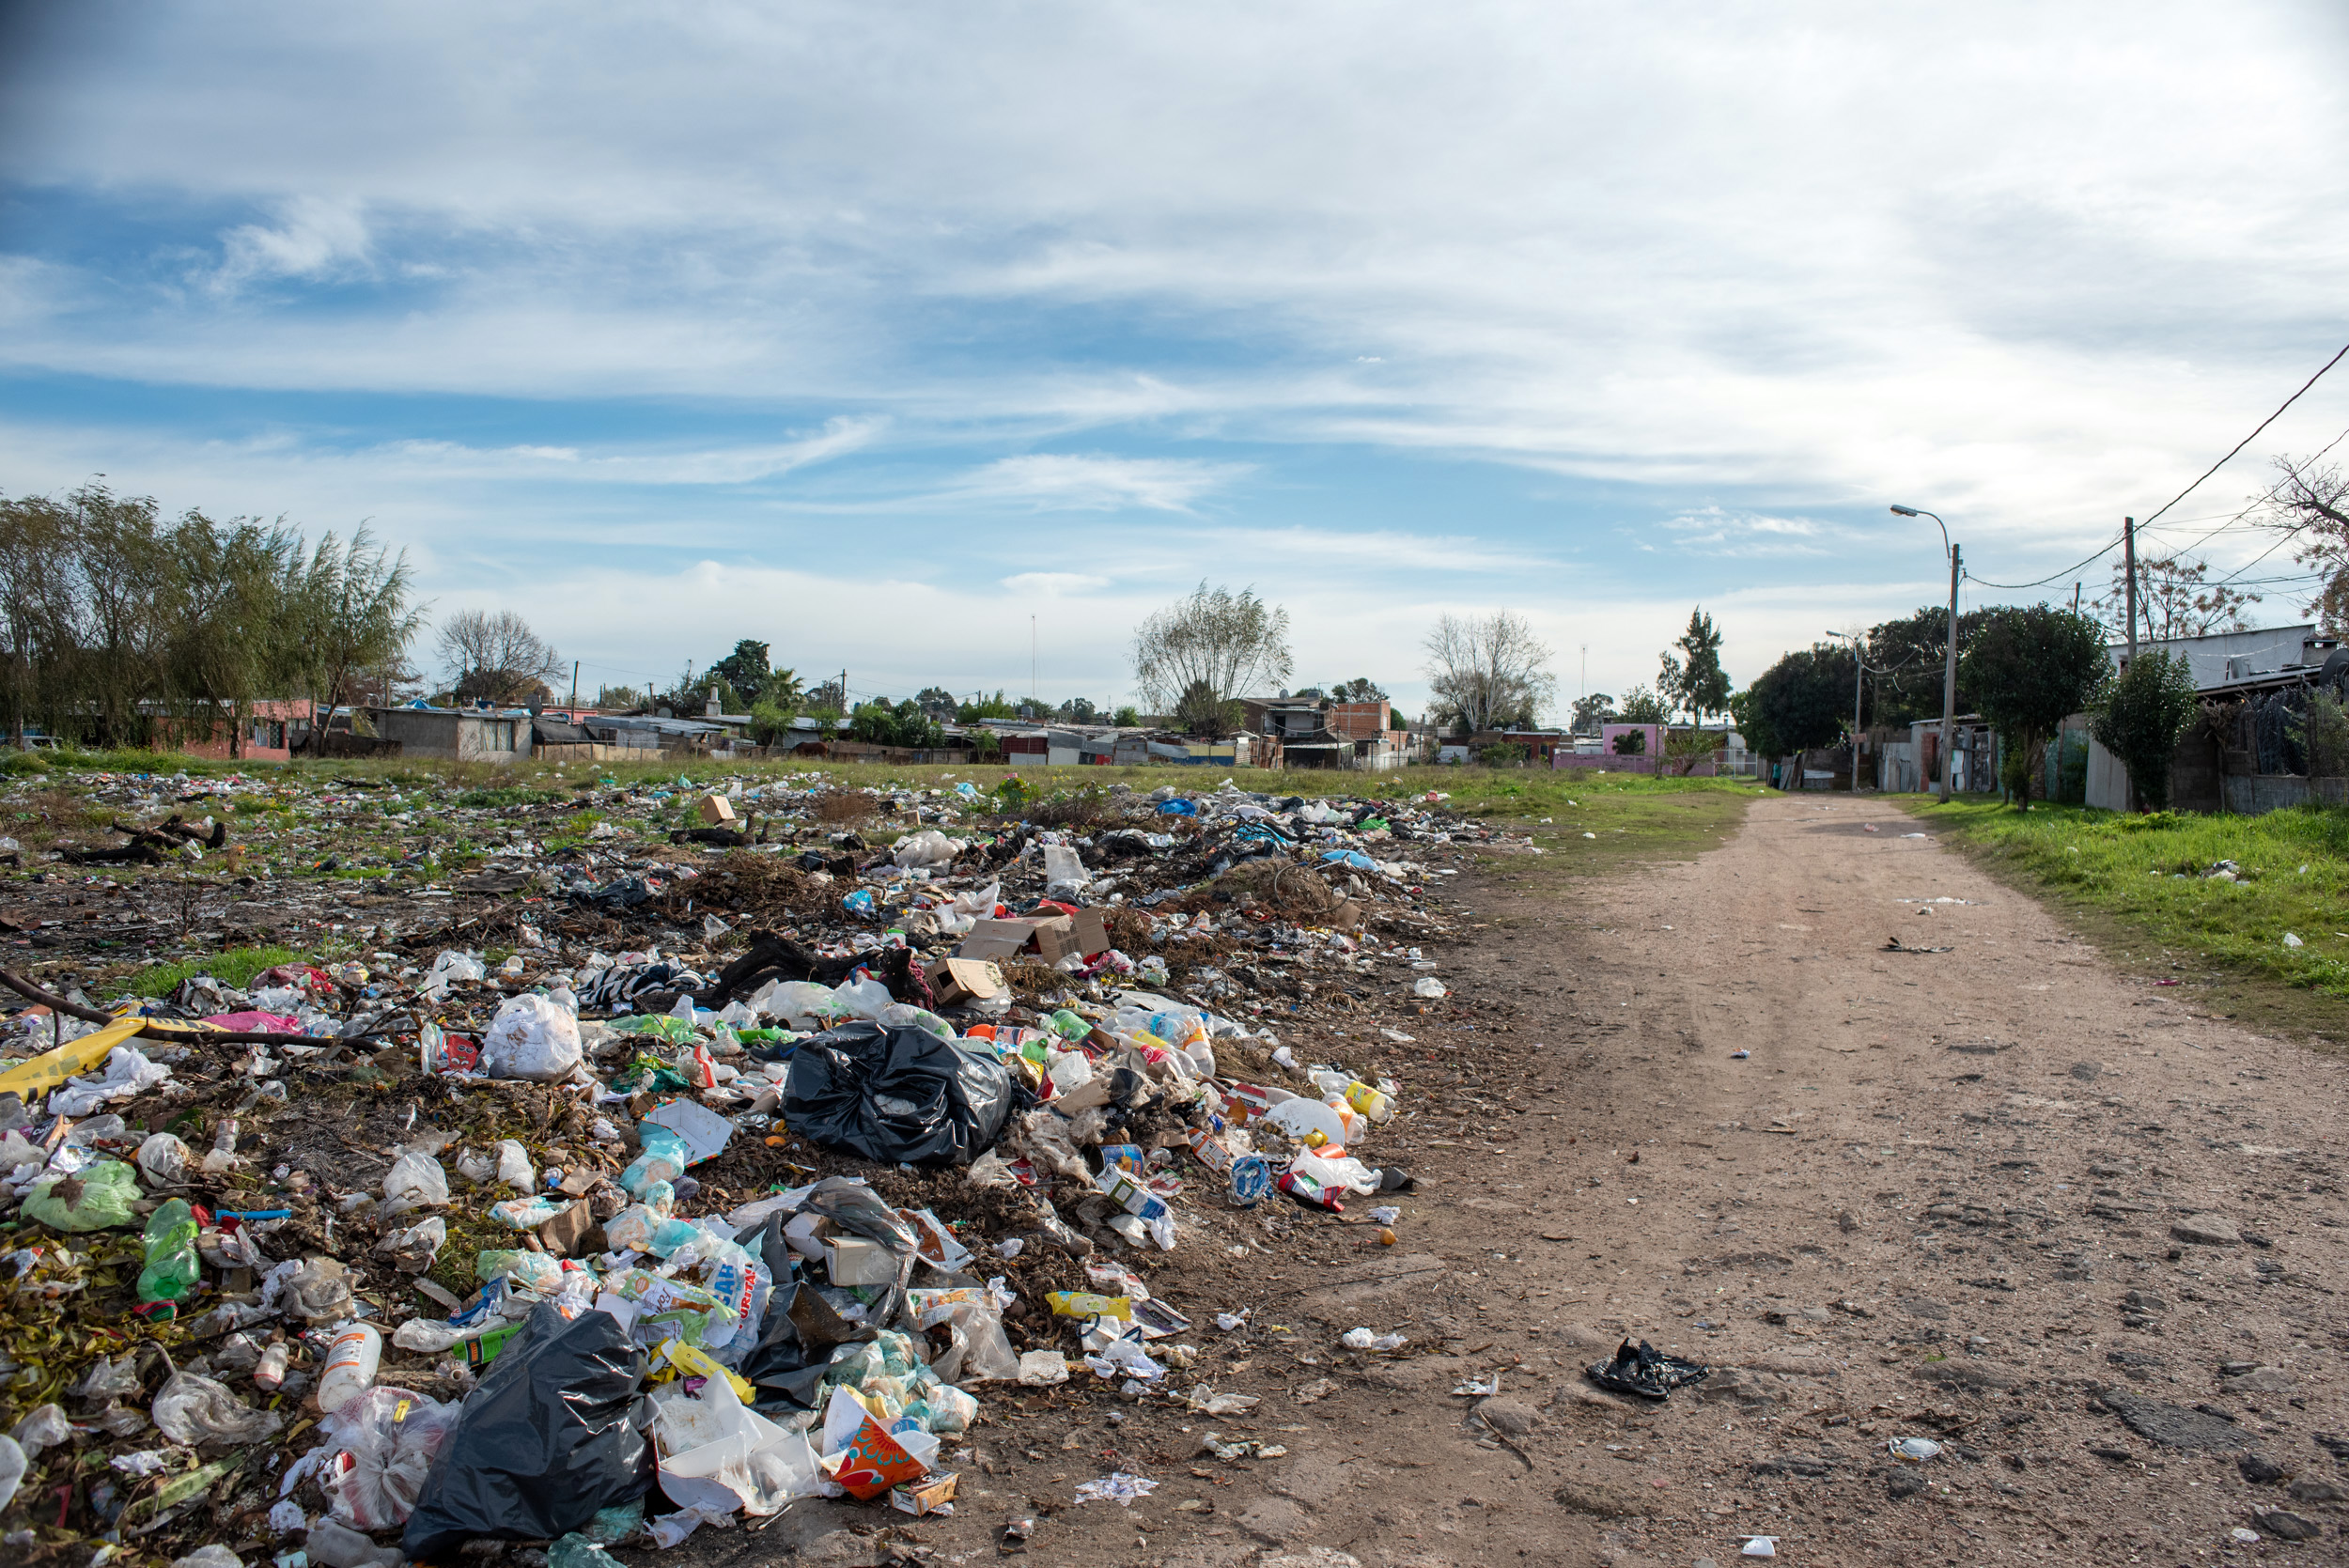 Limpieza de basural en Asentamiento 24 de enero el marco del Plan ABC. Domingo Arena y Elisa Menéndez